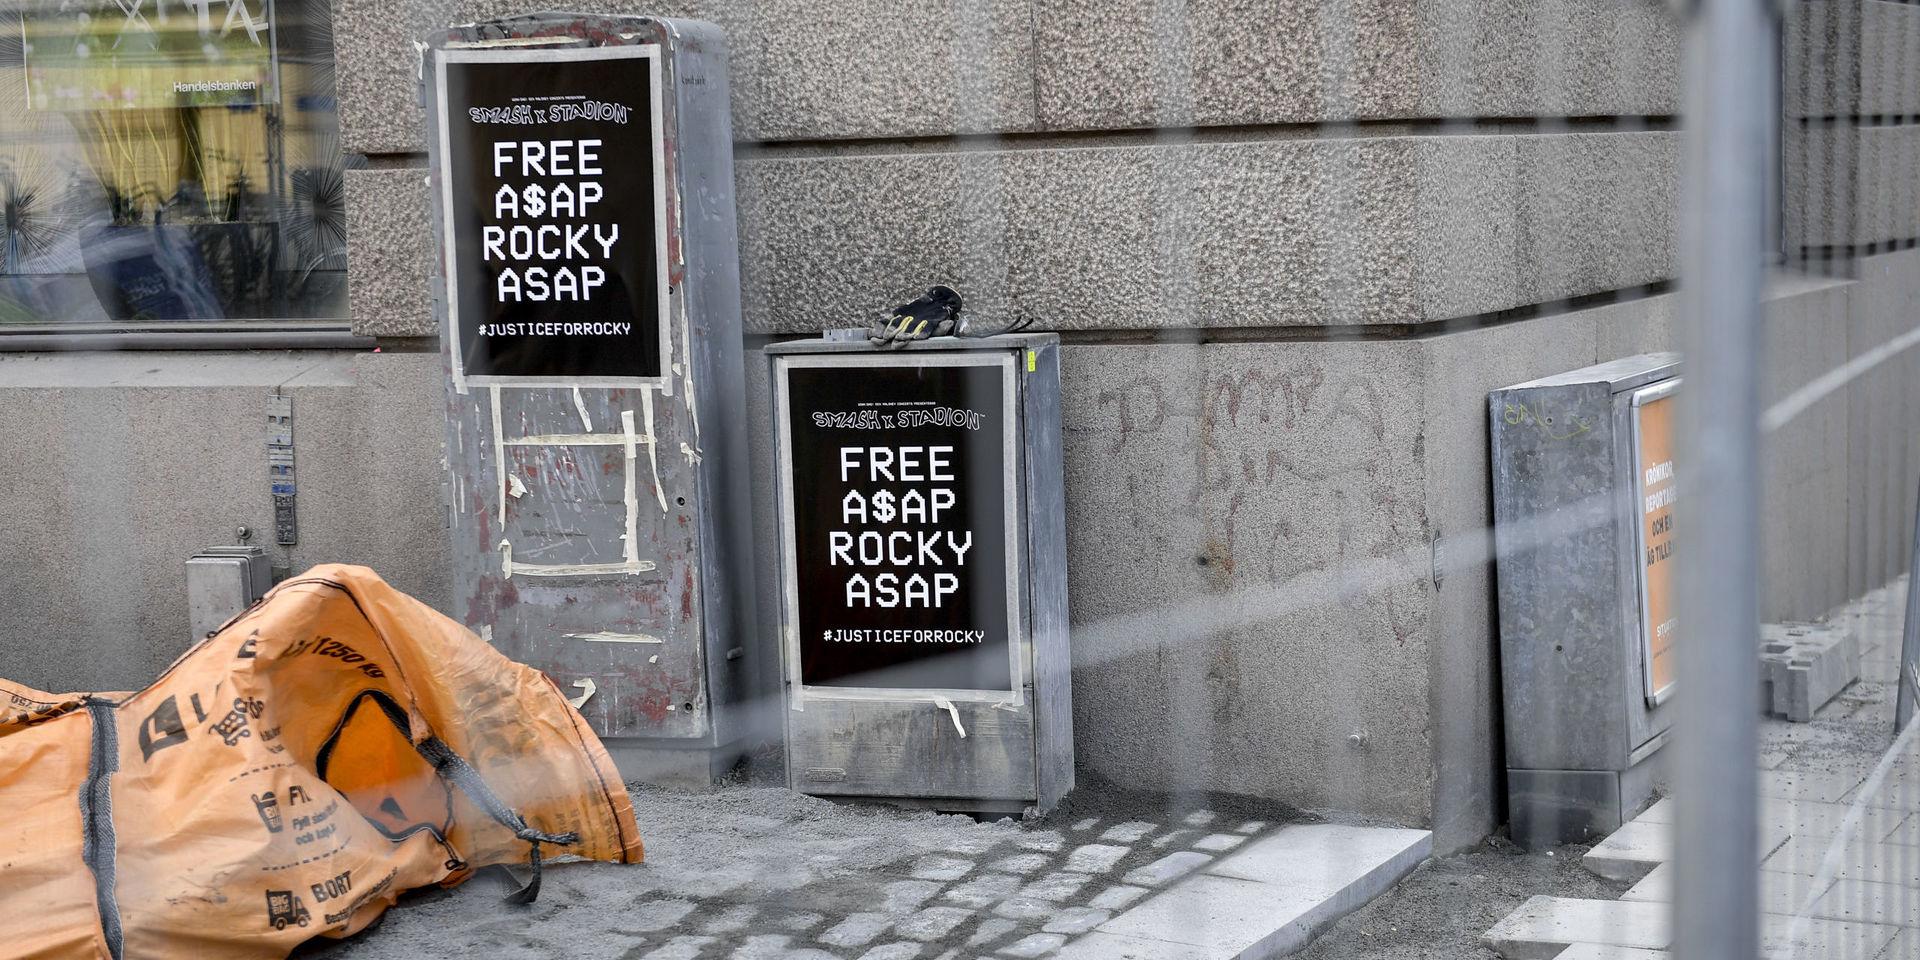 Musikfestivalen Smash Stadion drog igång en affisch-kampanj för att fria ASAP Rocky i samband med hans häktning för misshandel i Stockholm.